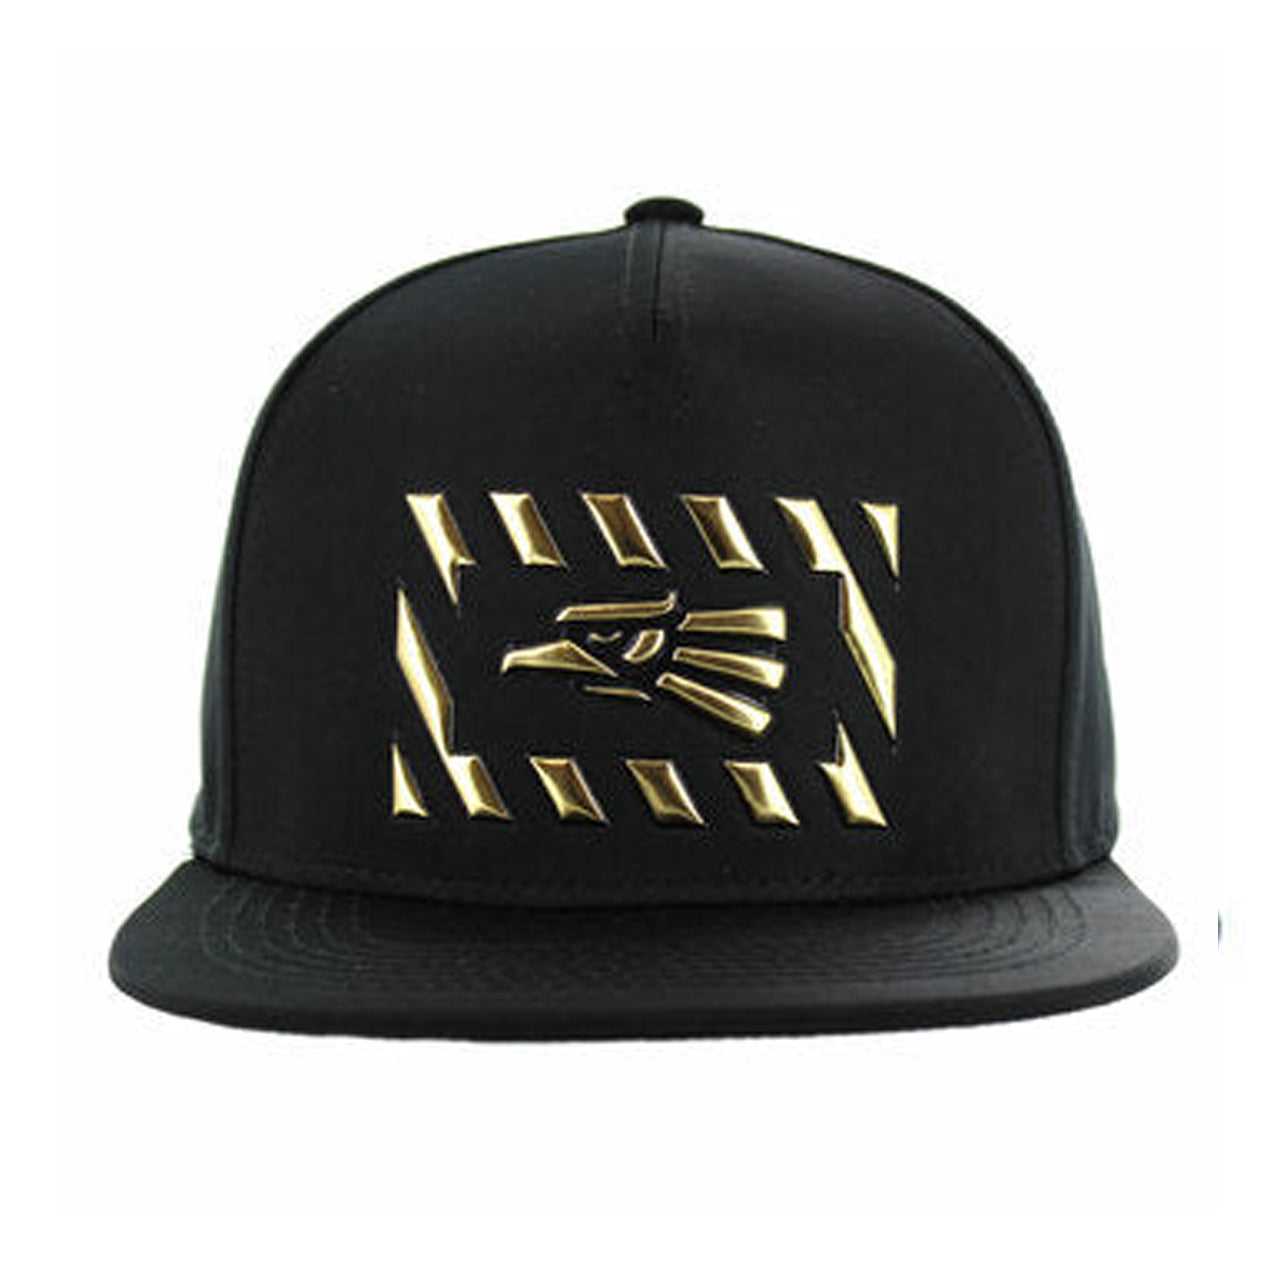 SM141 Eagle Snapback Hat - Black & Black (Pack of 12)